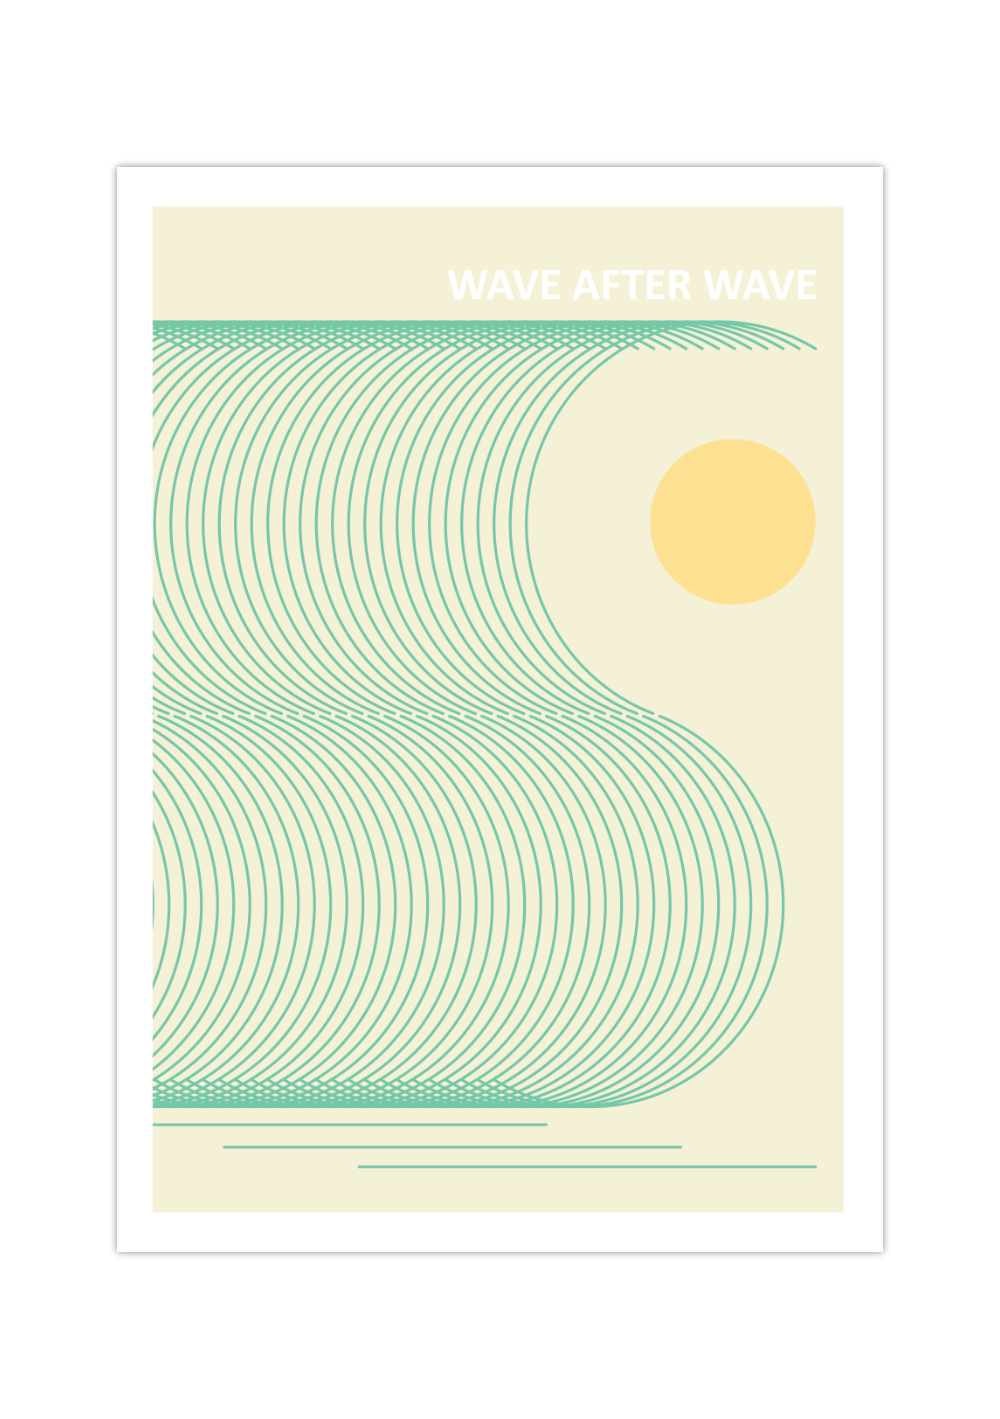 Das maritime Poster zeigt minimalistisch dargestellte Wellen, eine Orange Sonne, sowie den Spruch Wave after Wave.